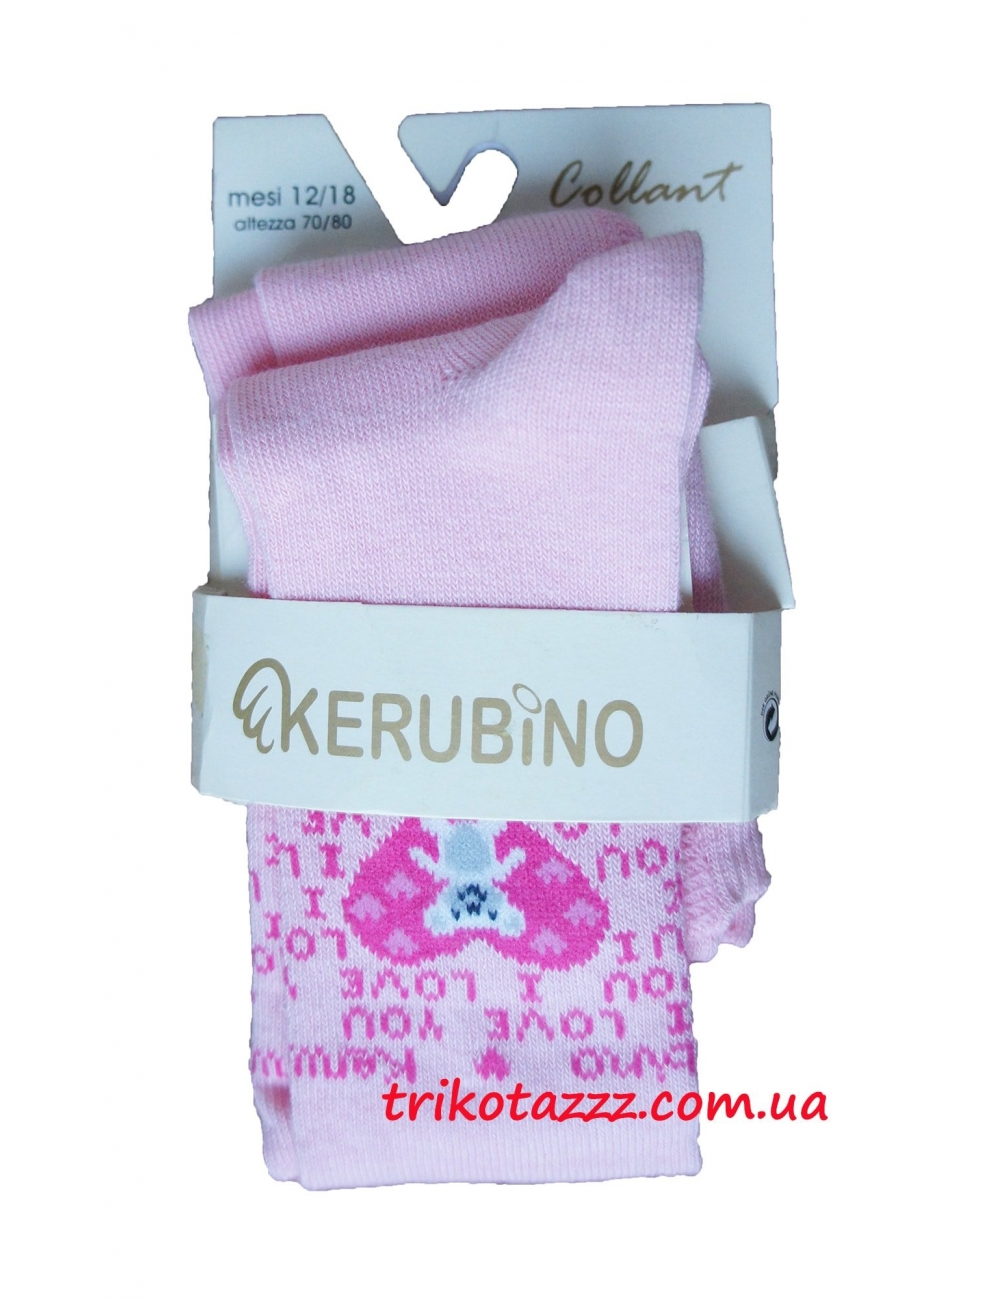 Колготки для  девочки тм "Kerubino" розовые с сердечком